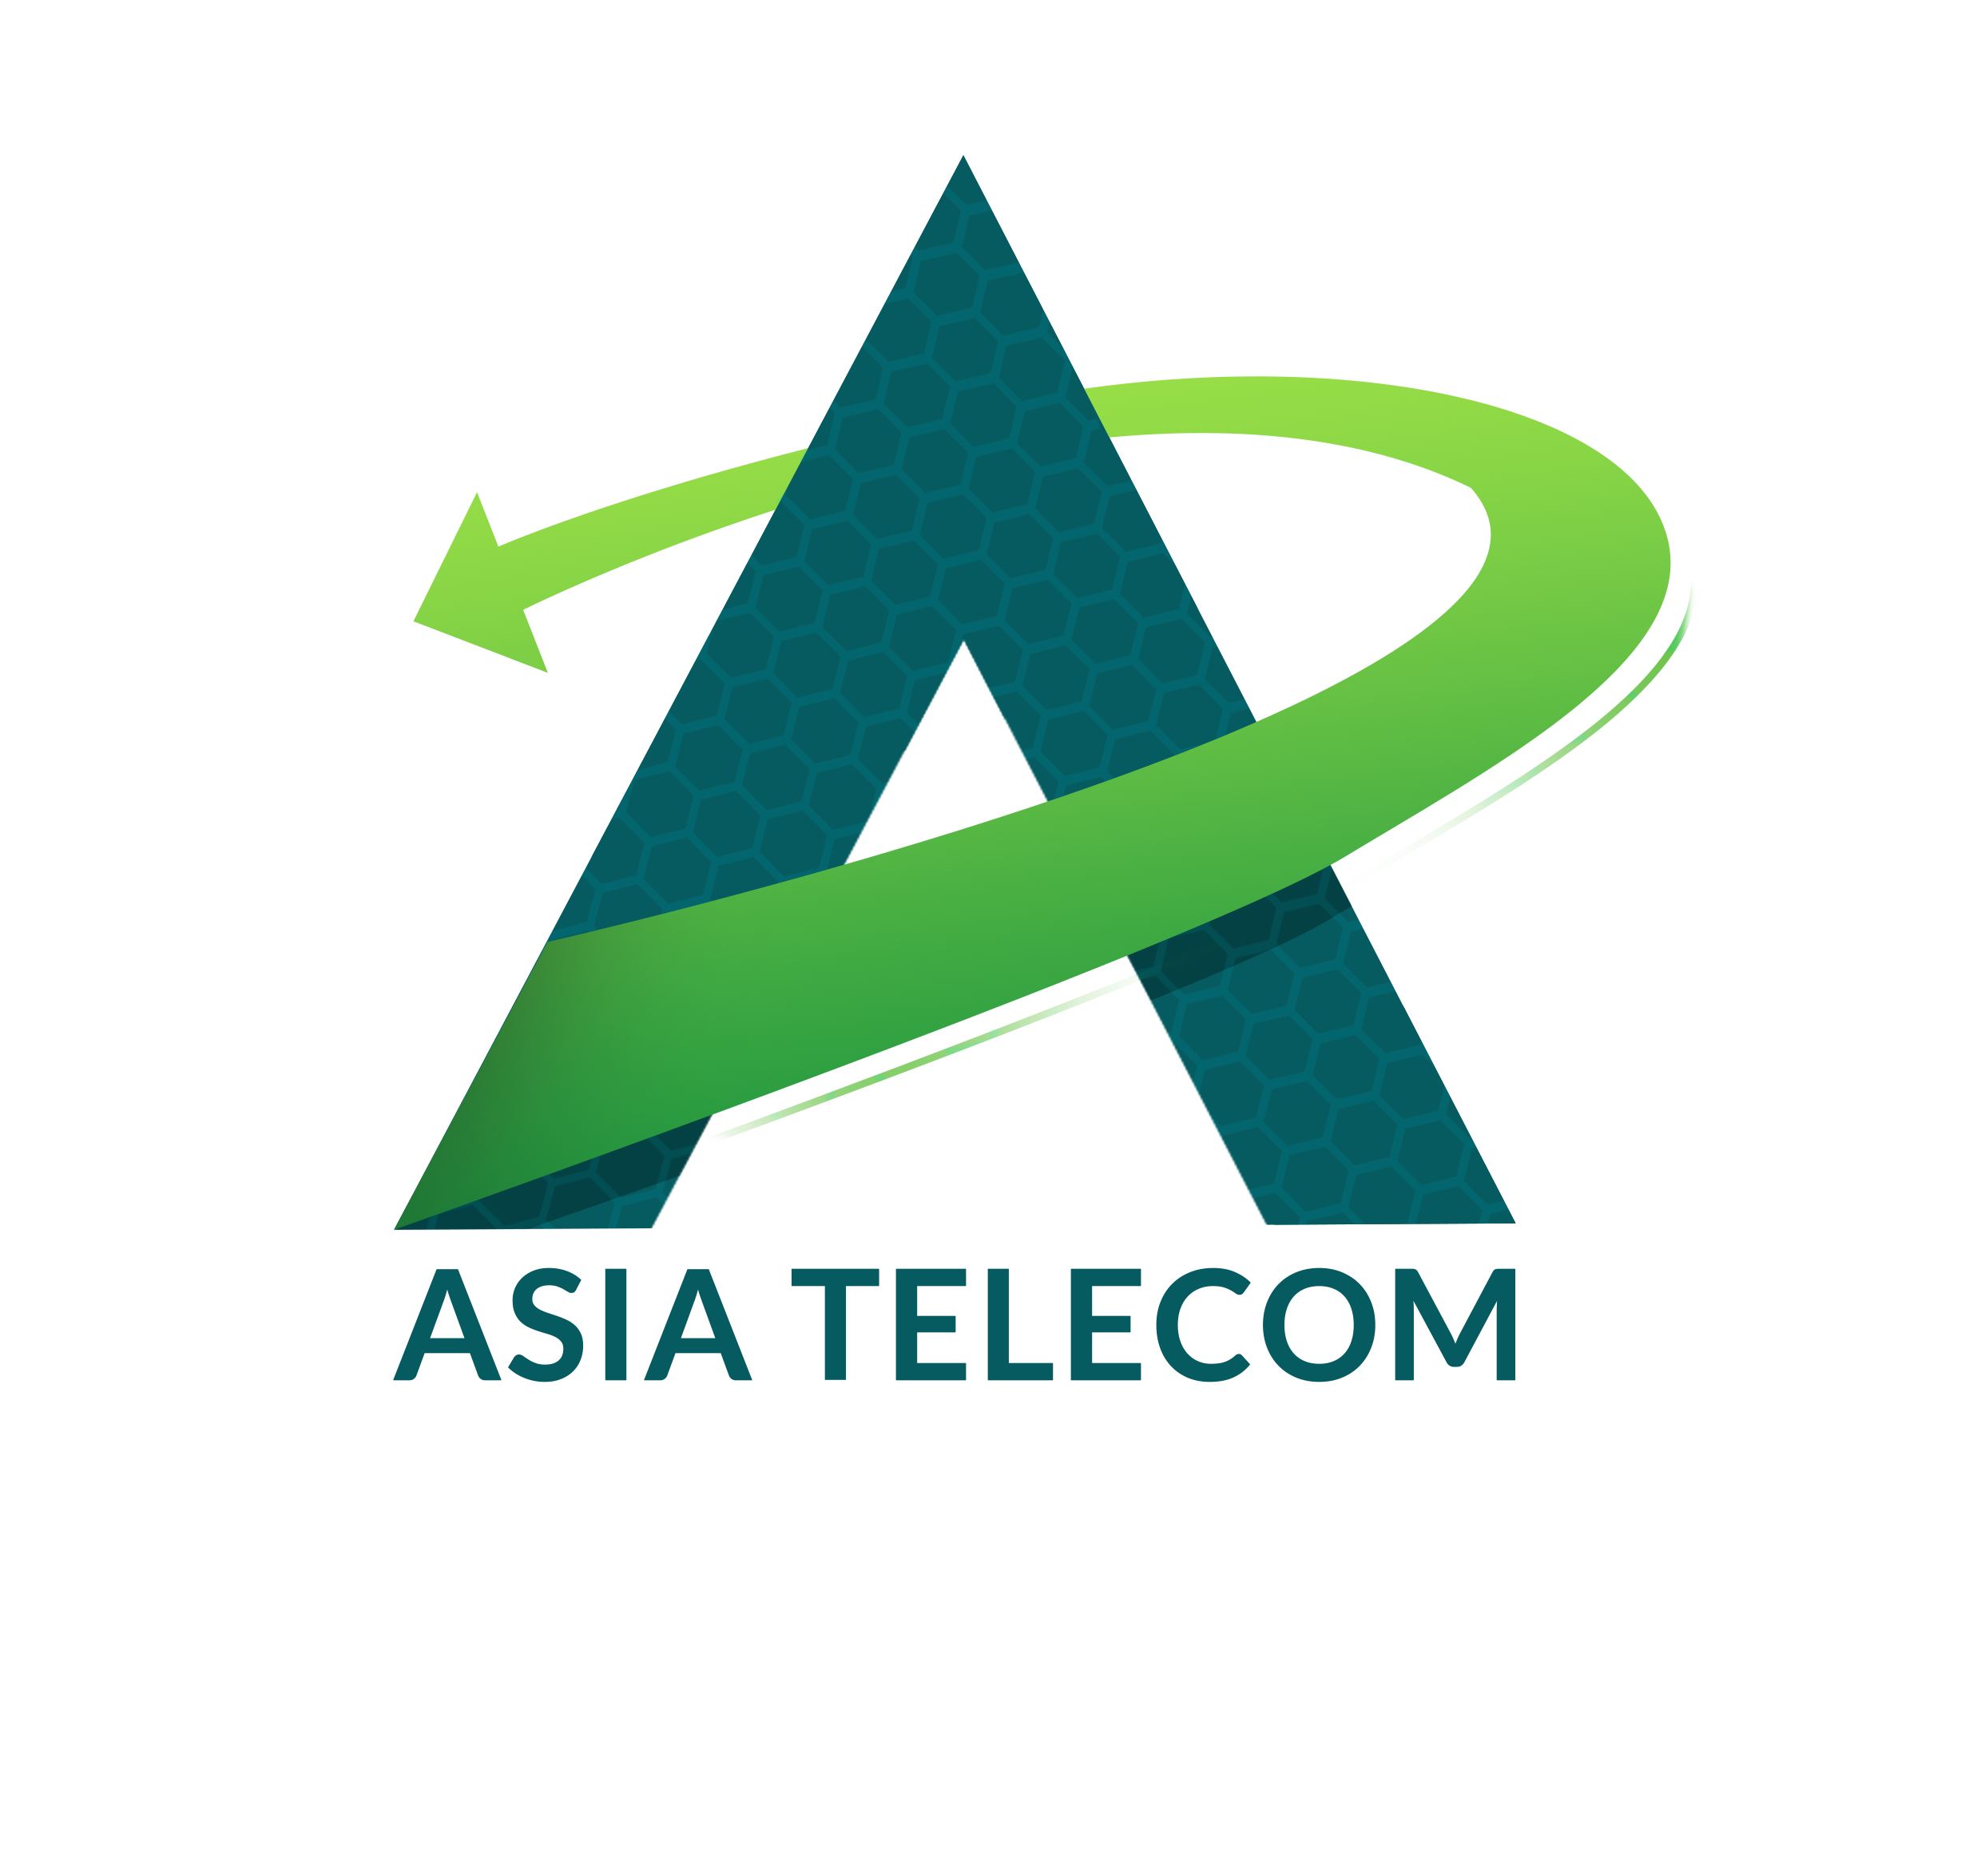 Asia Telecm